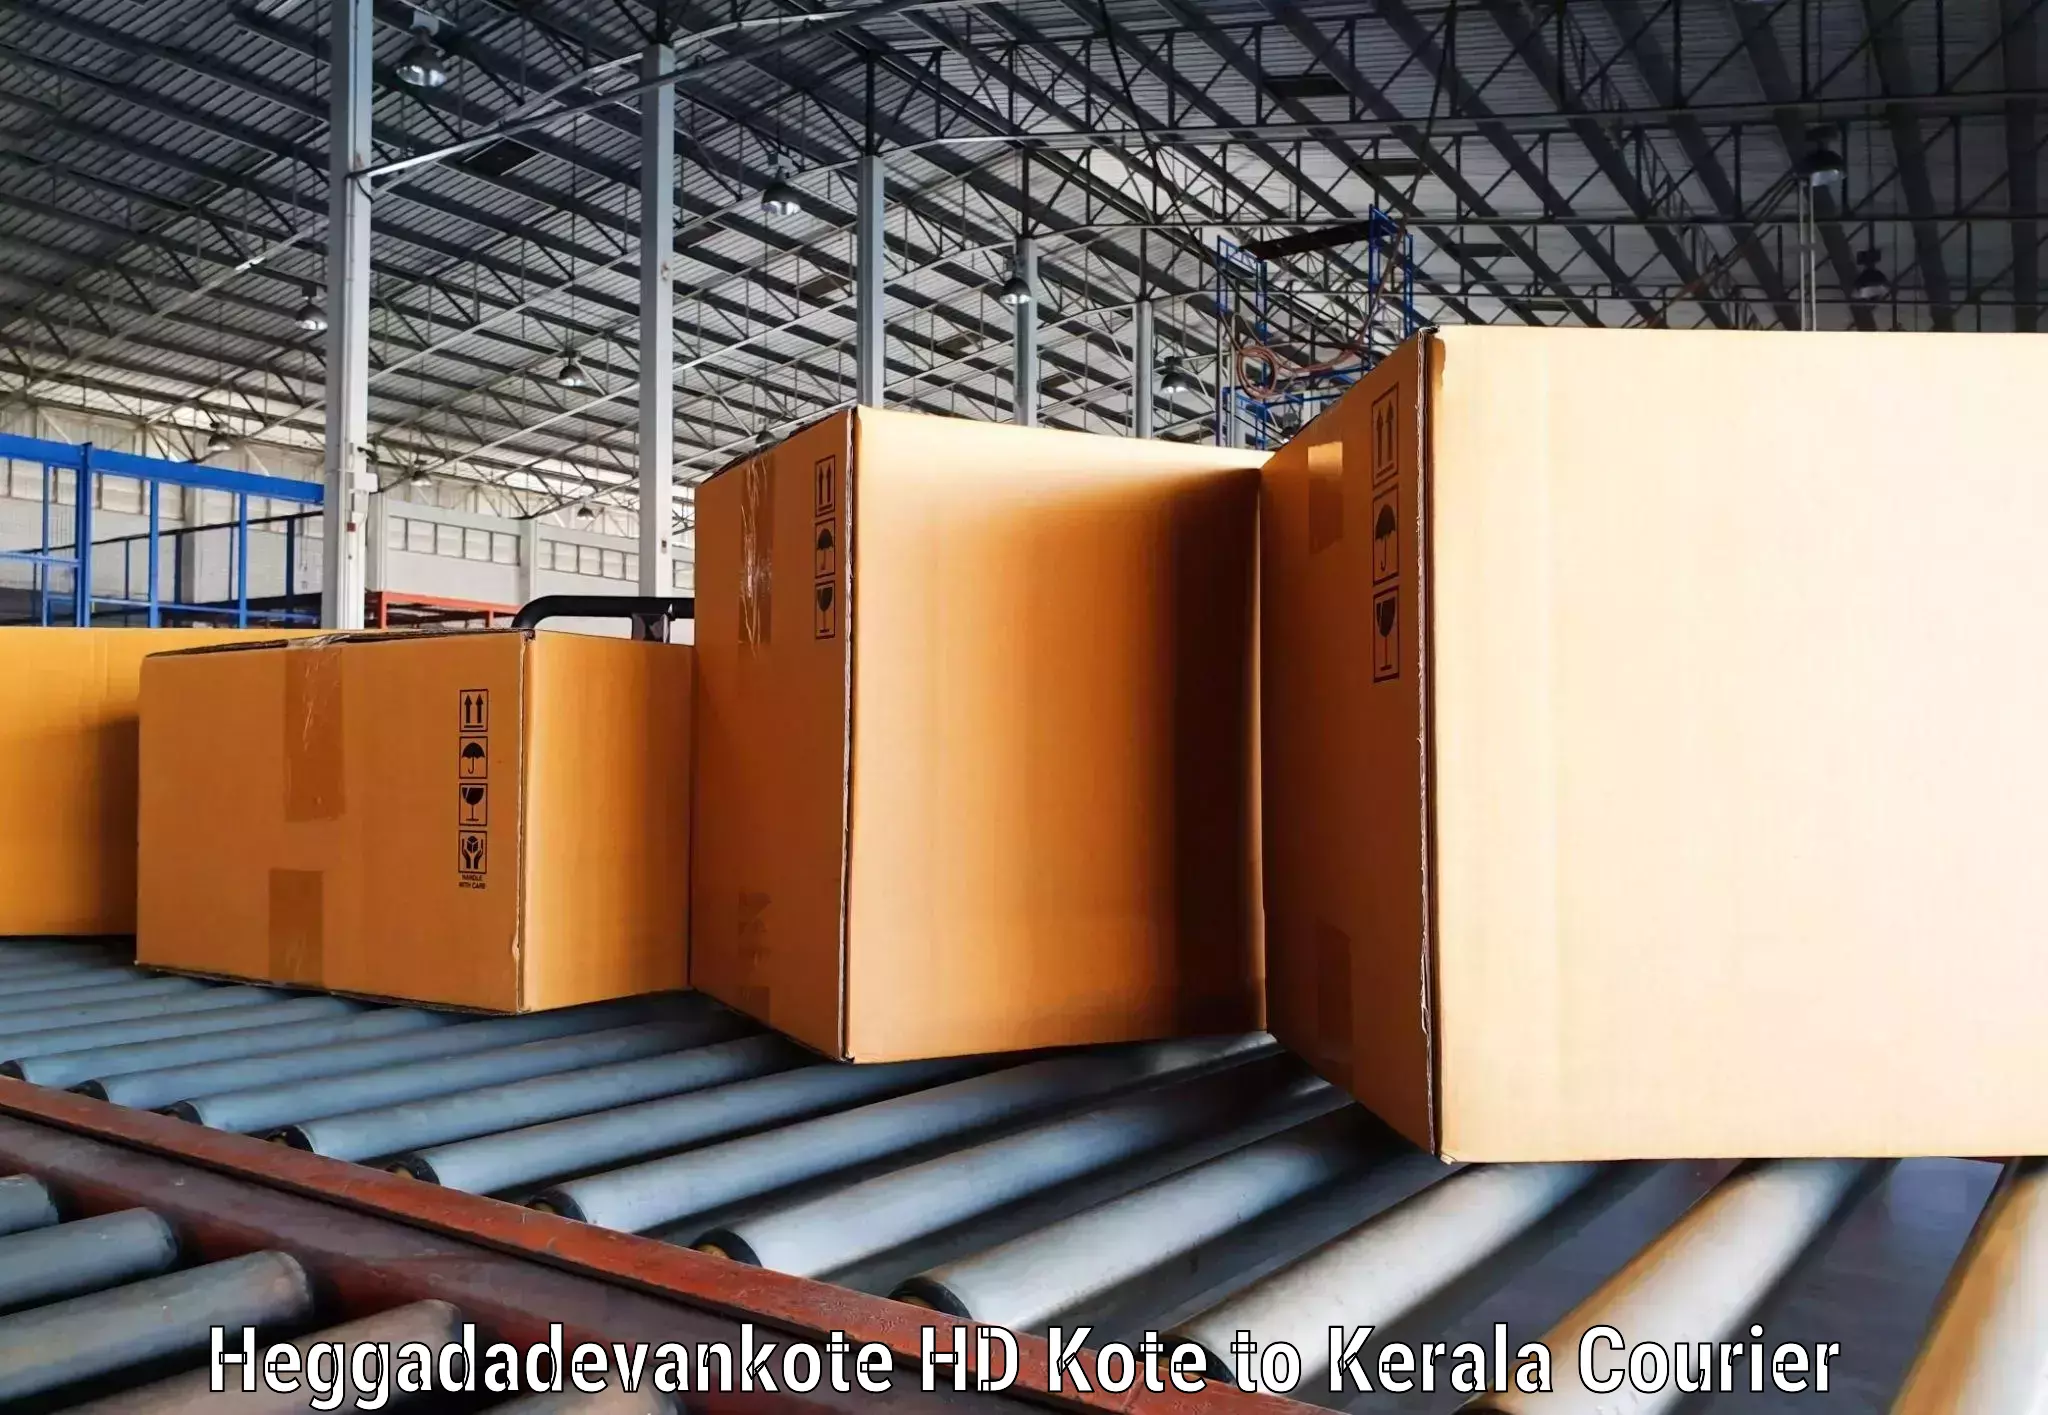 Rapid freight solutions Heggadadevankote HD Kote to Thodupuzha